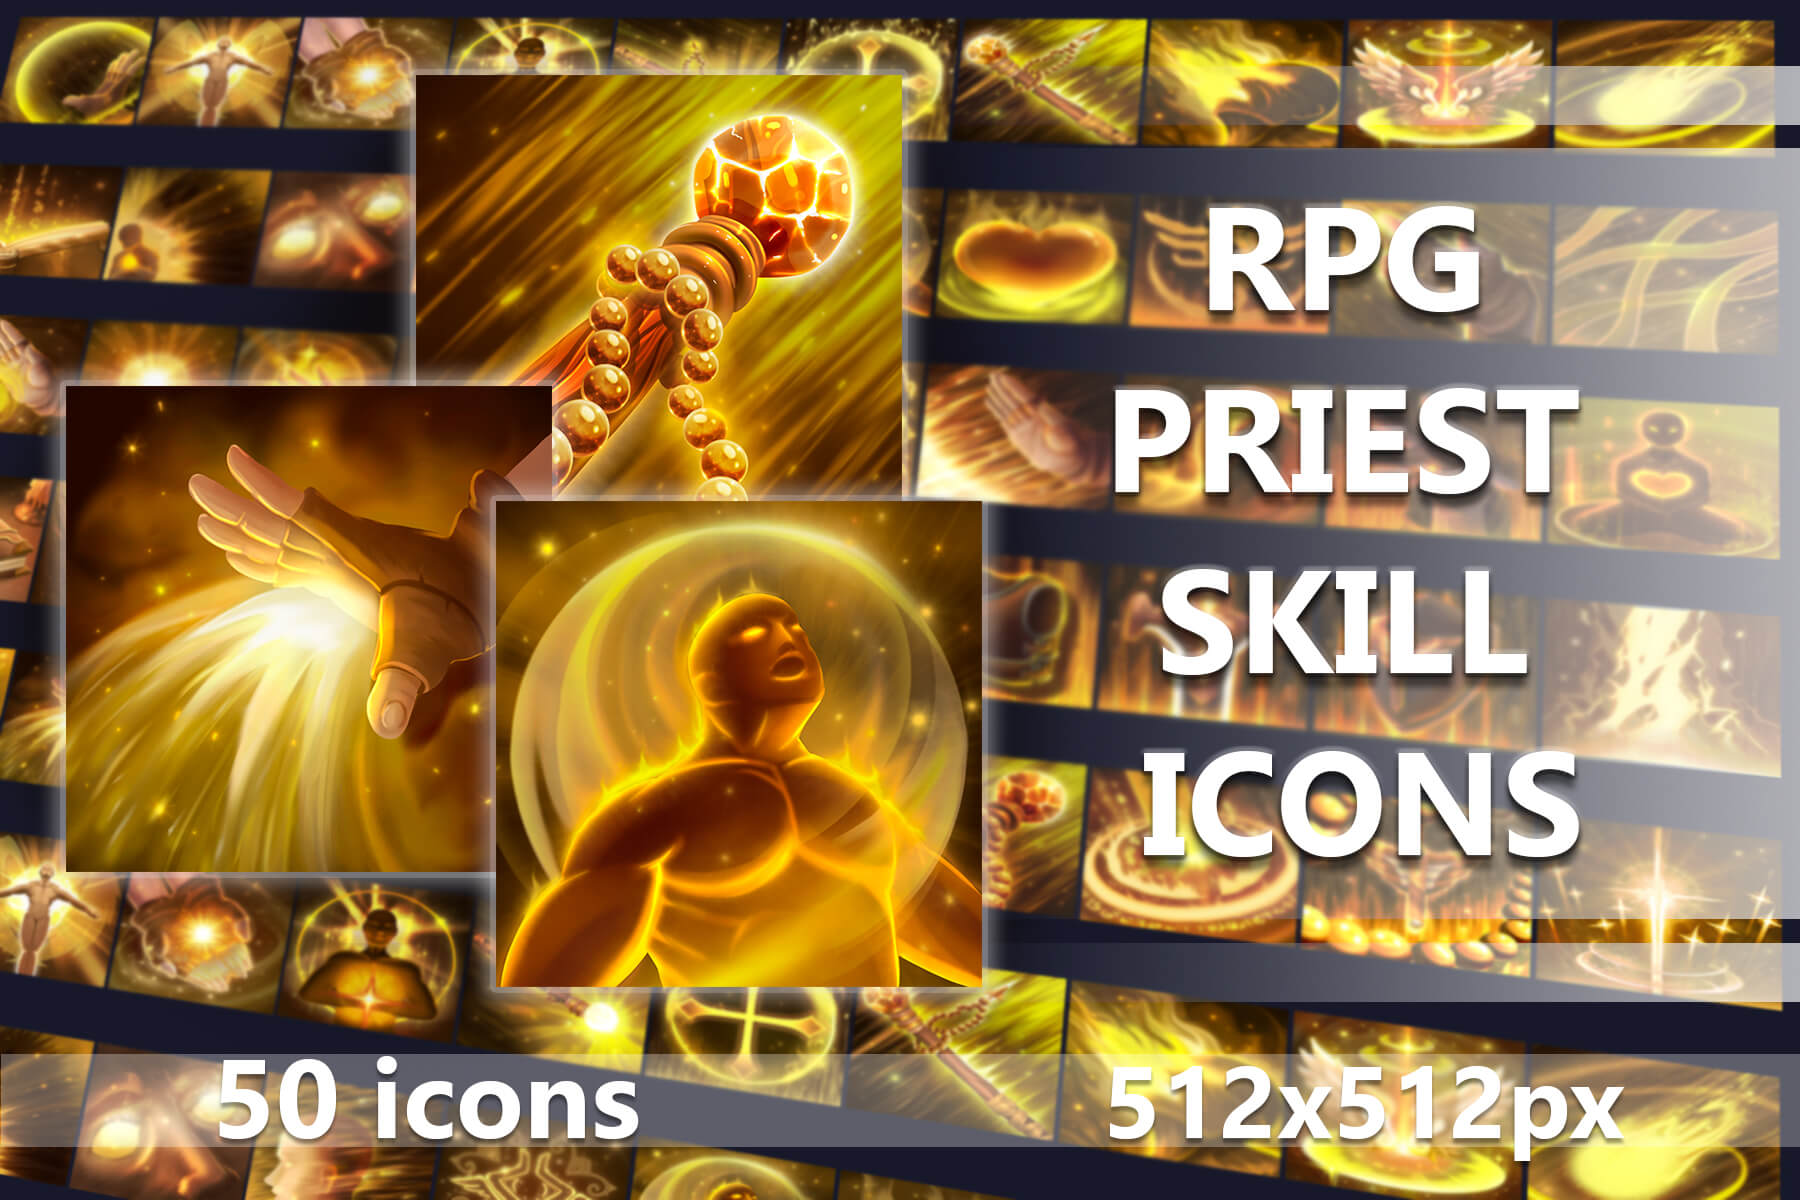 RPG Priest Skill Icons